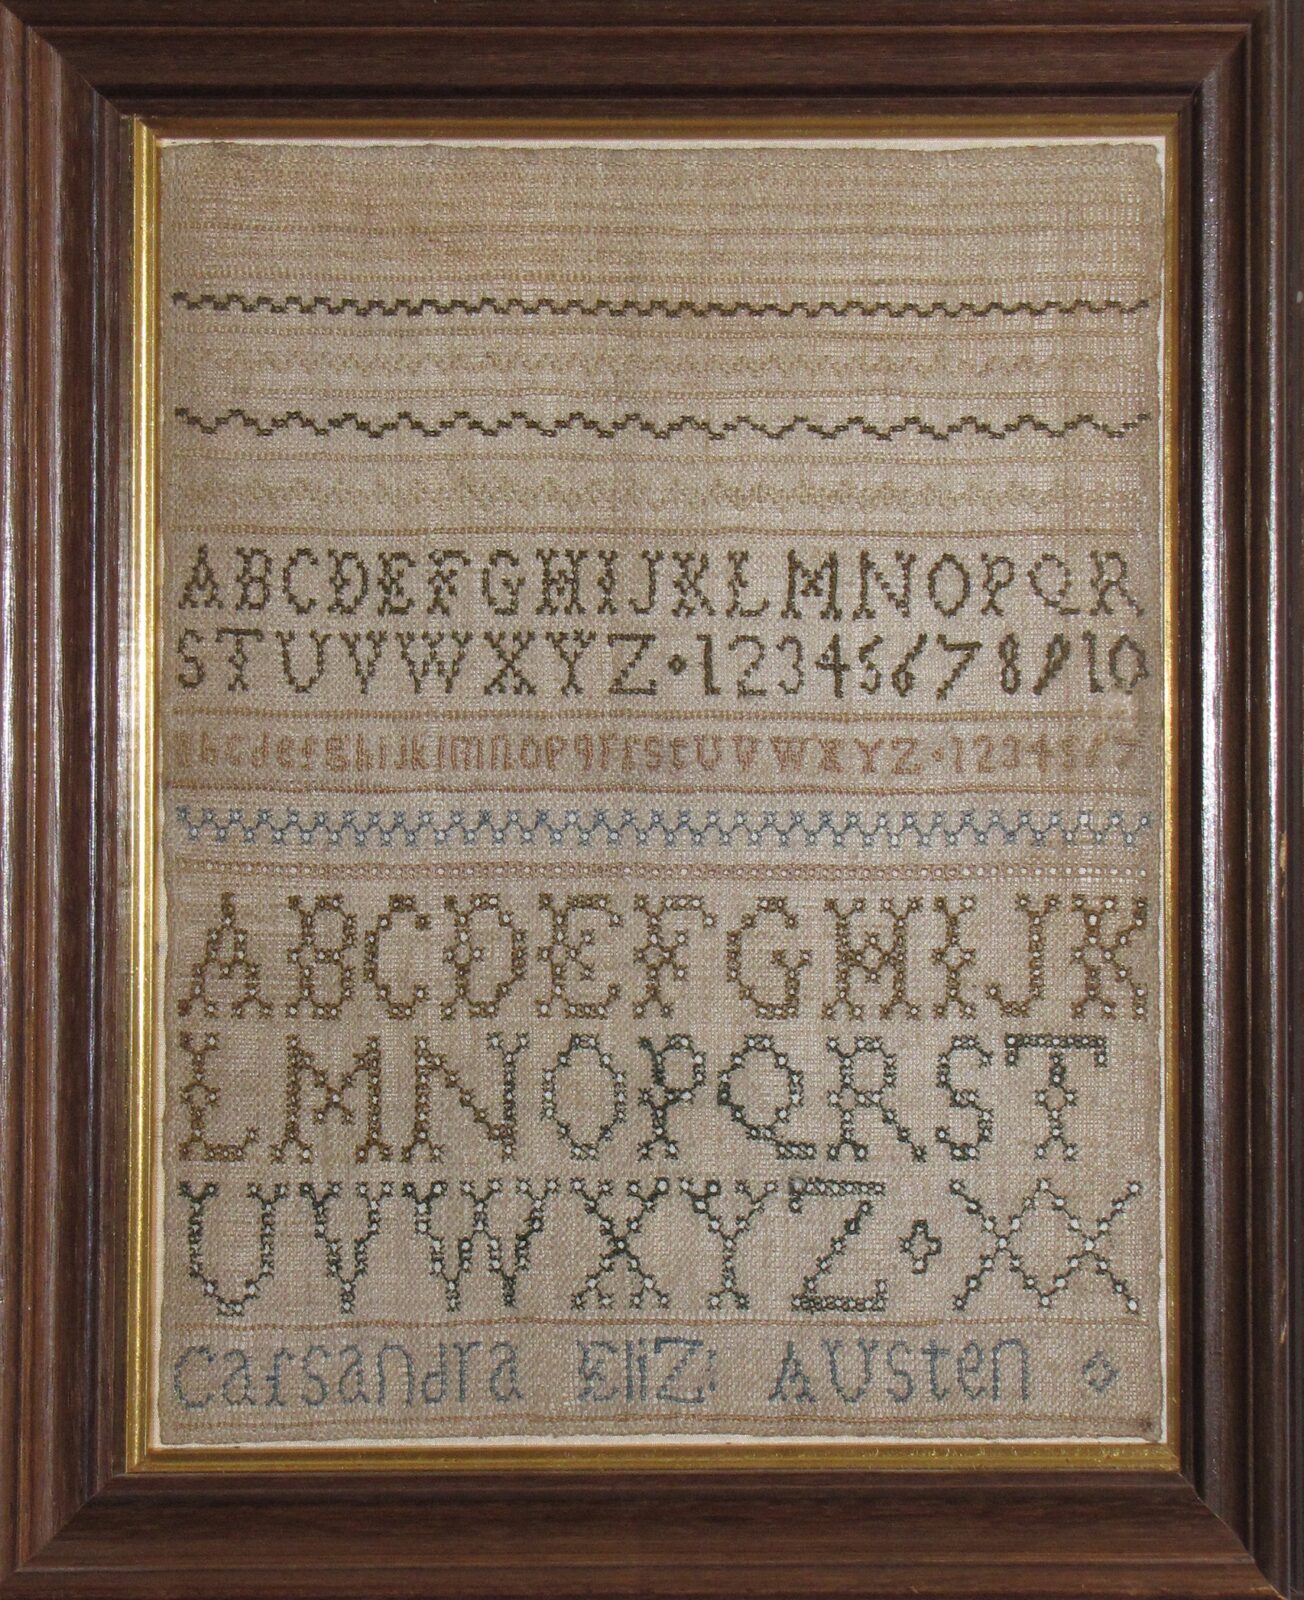 Sampler worked by Cassandra Austen, framed.